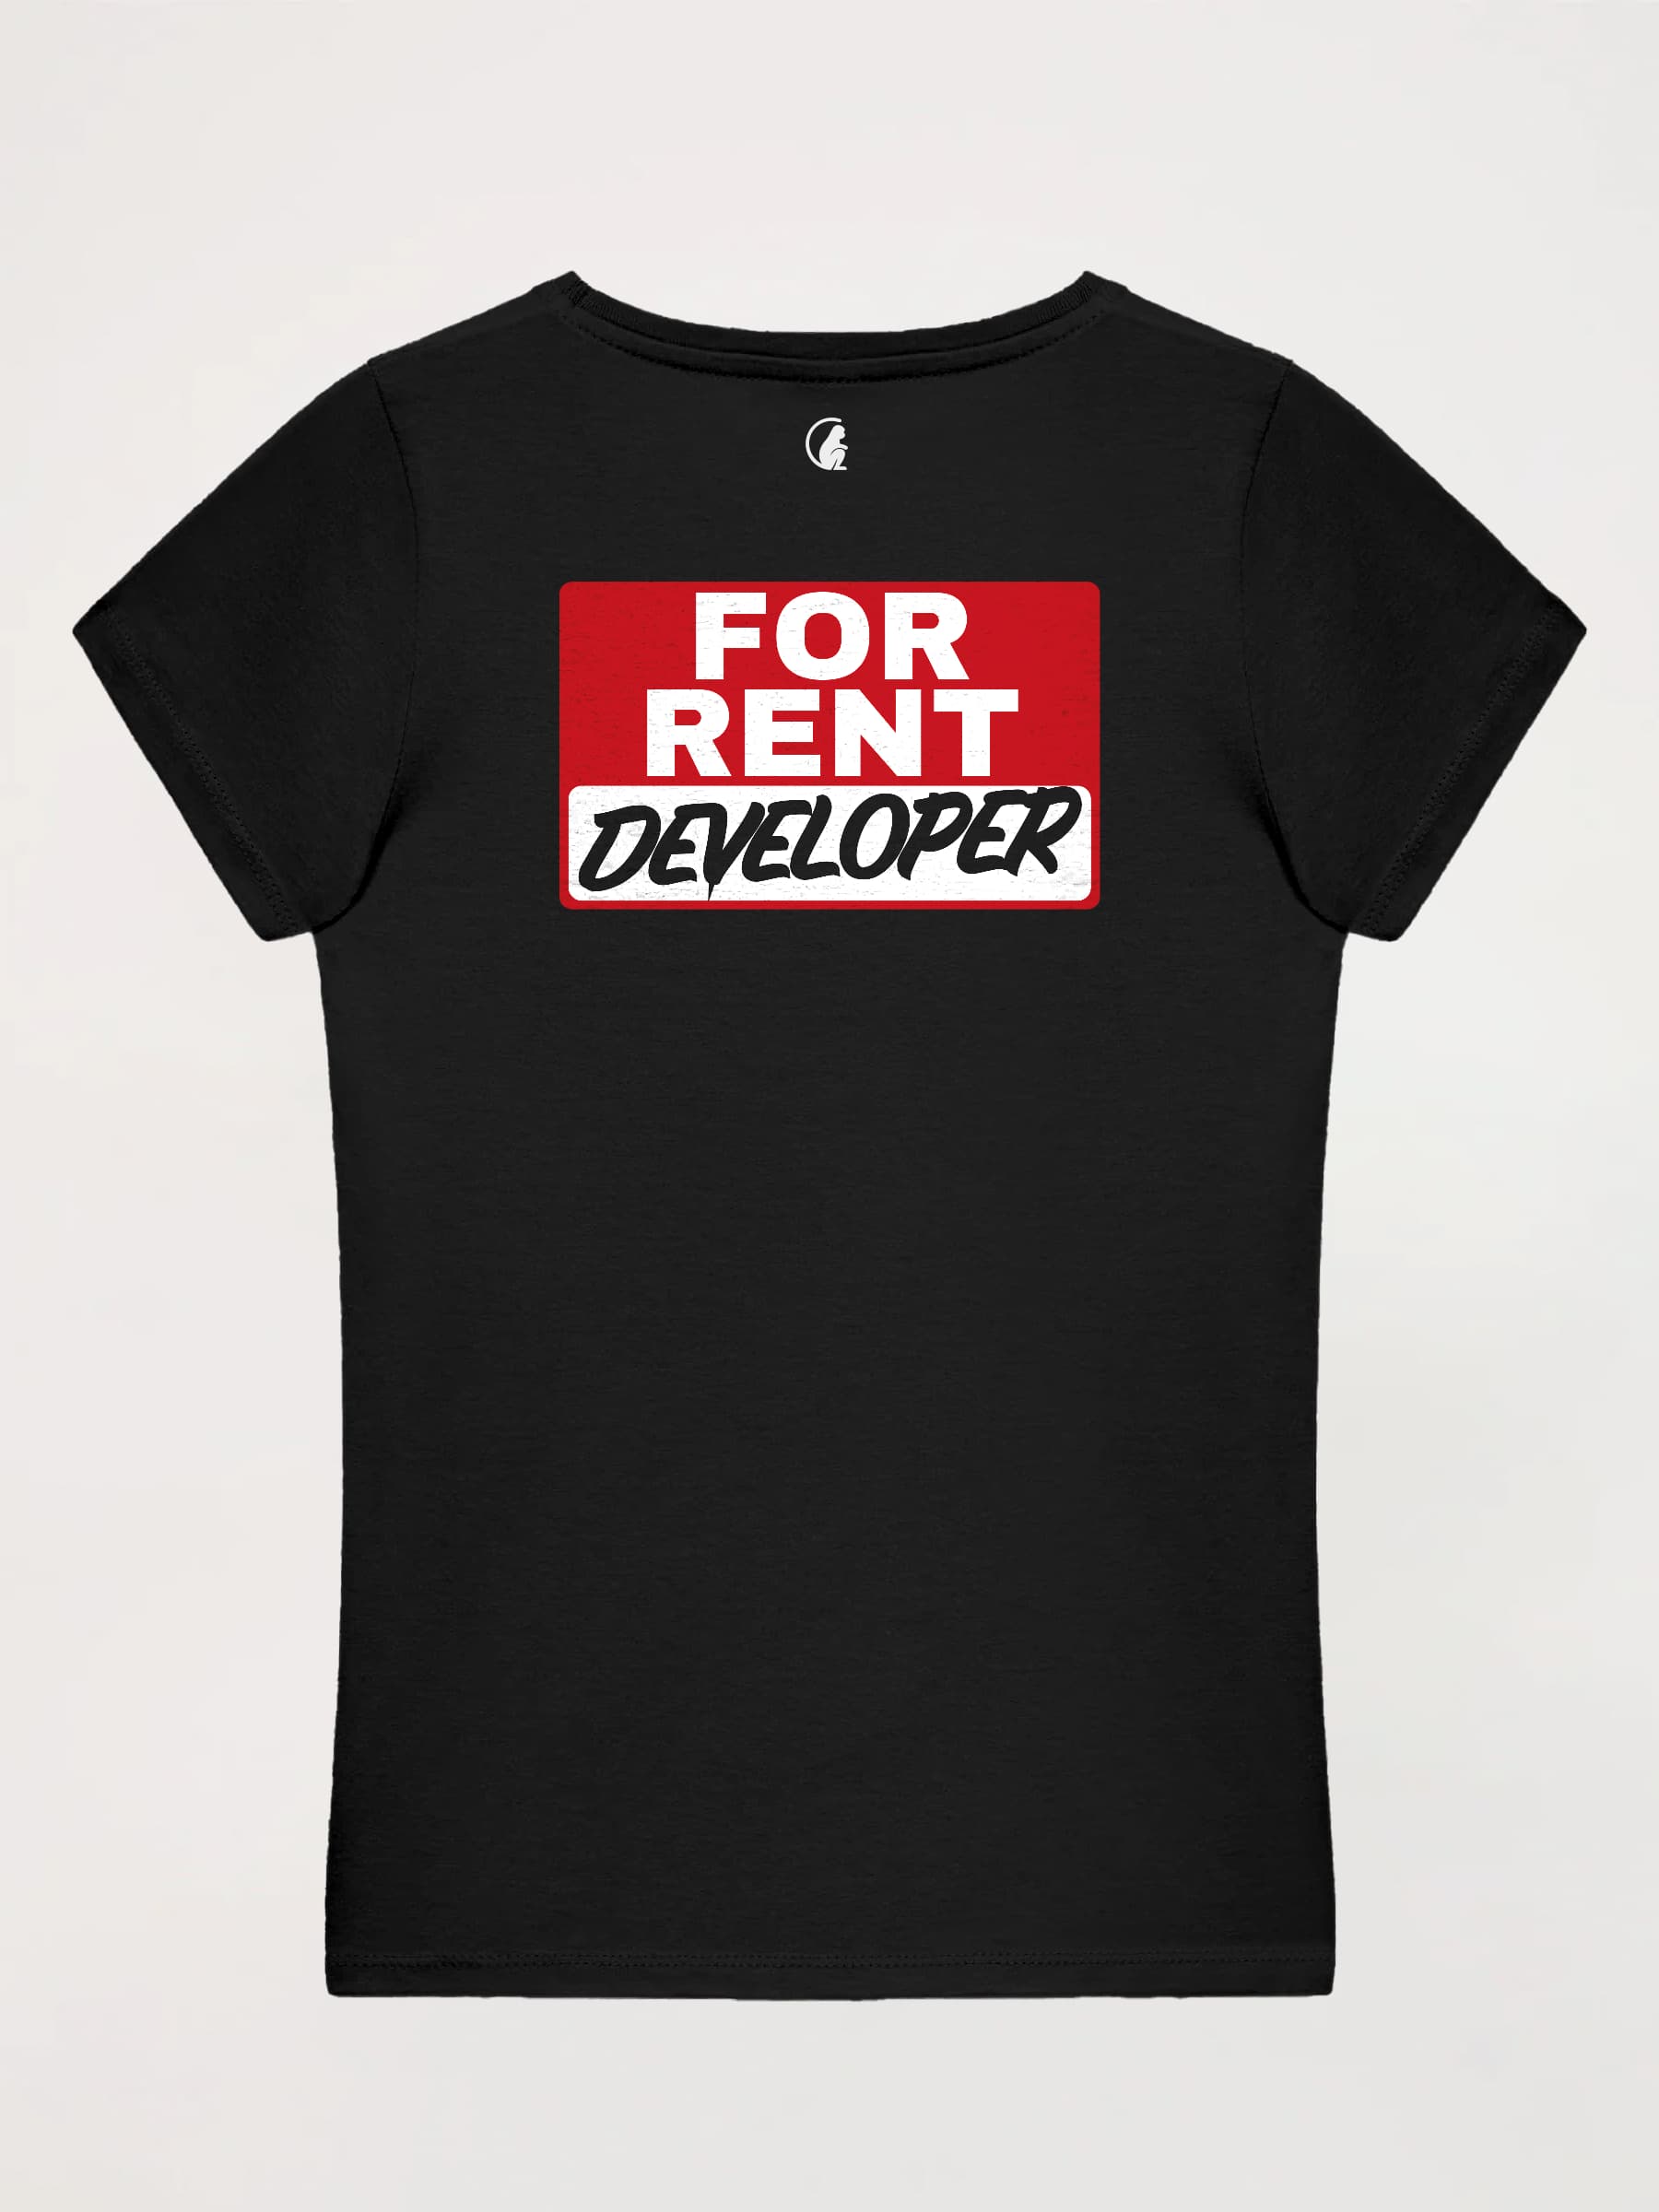 Camiseta Mujer Developer for Rent